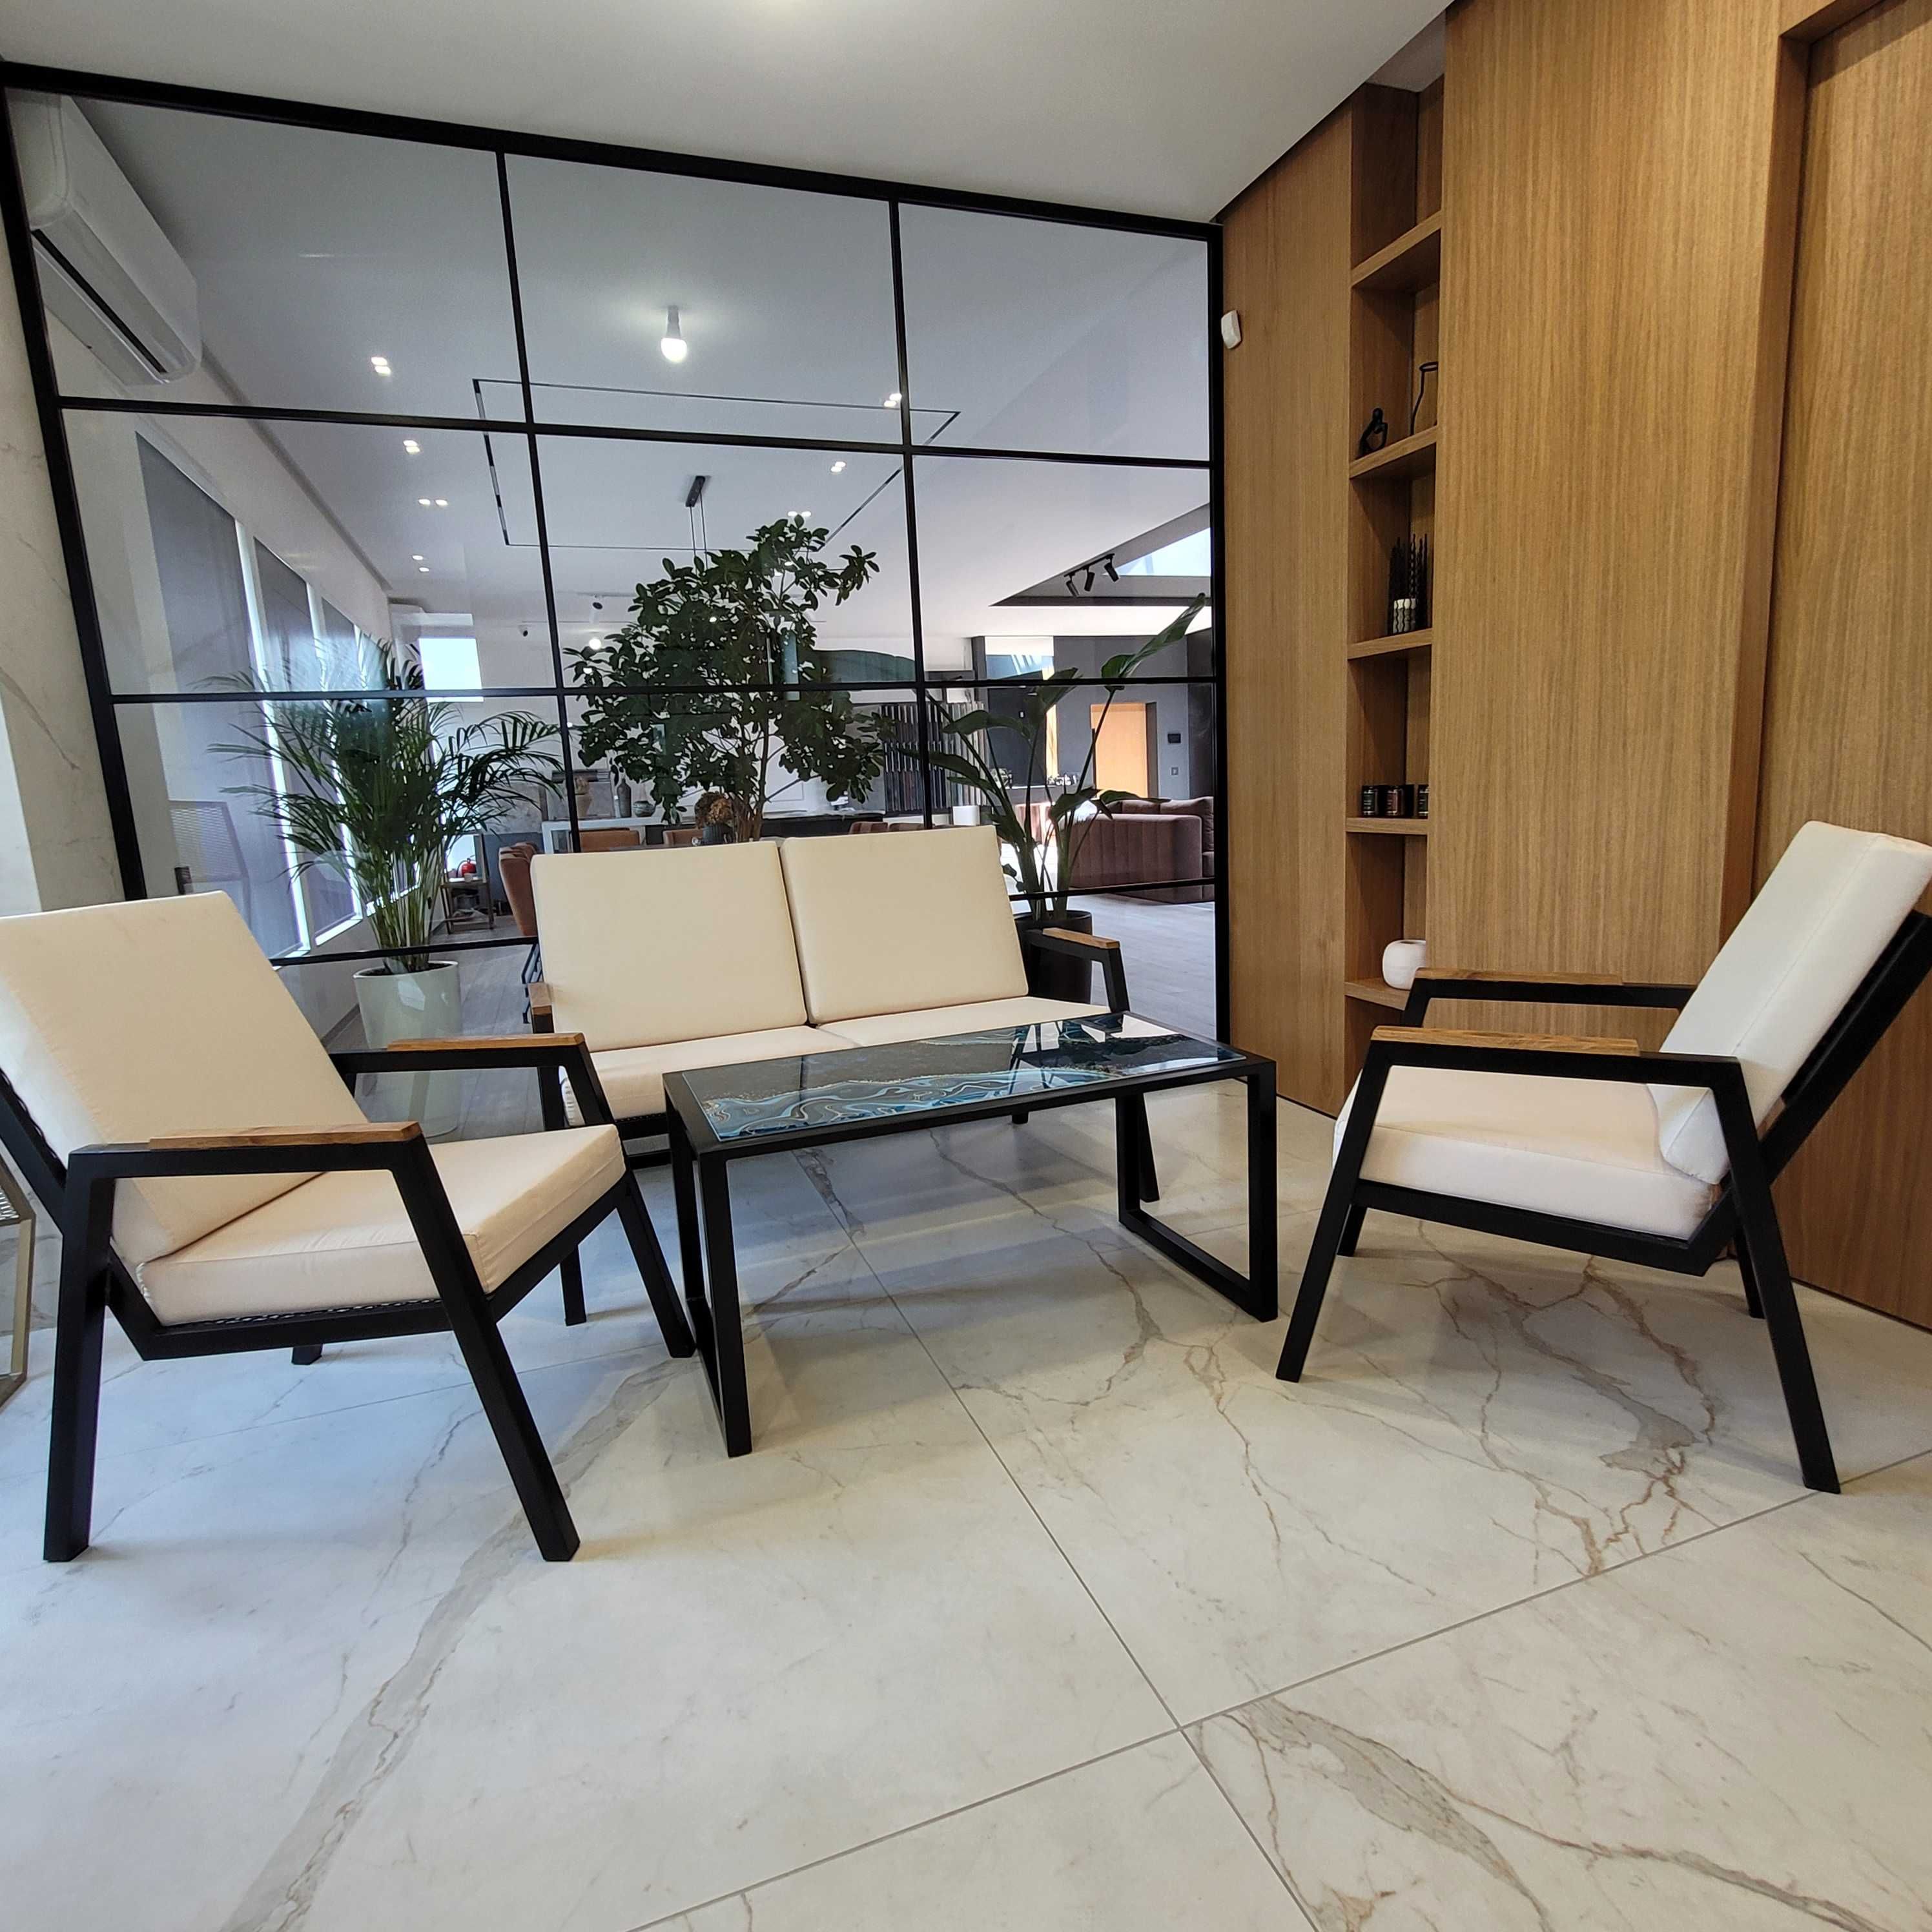 Меблі для тераси диван/крісла/стіл